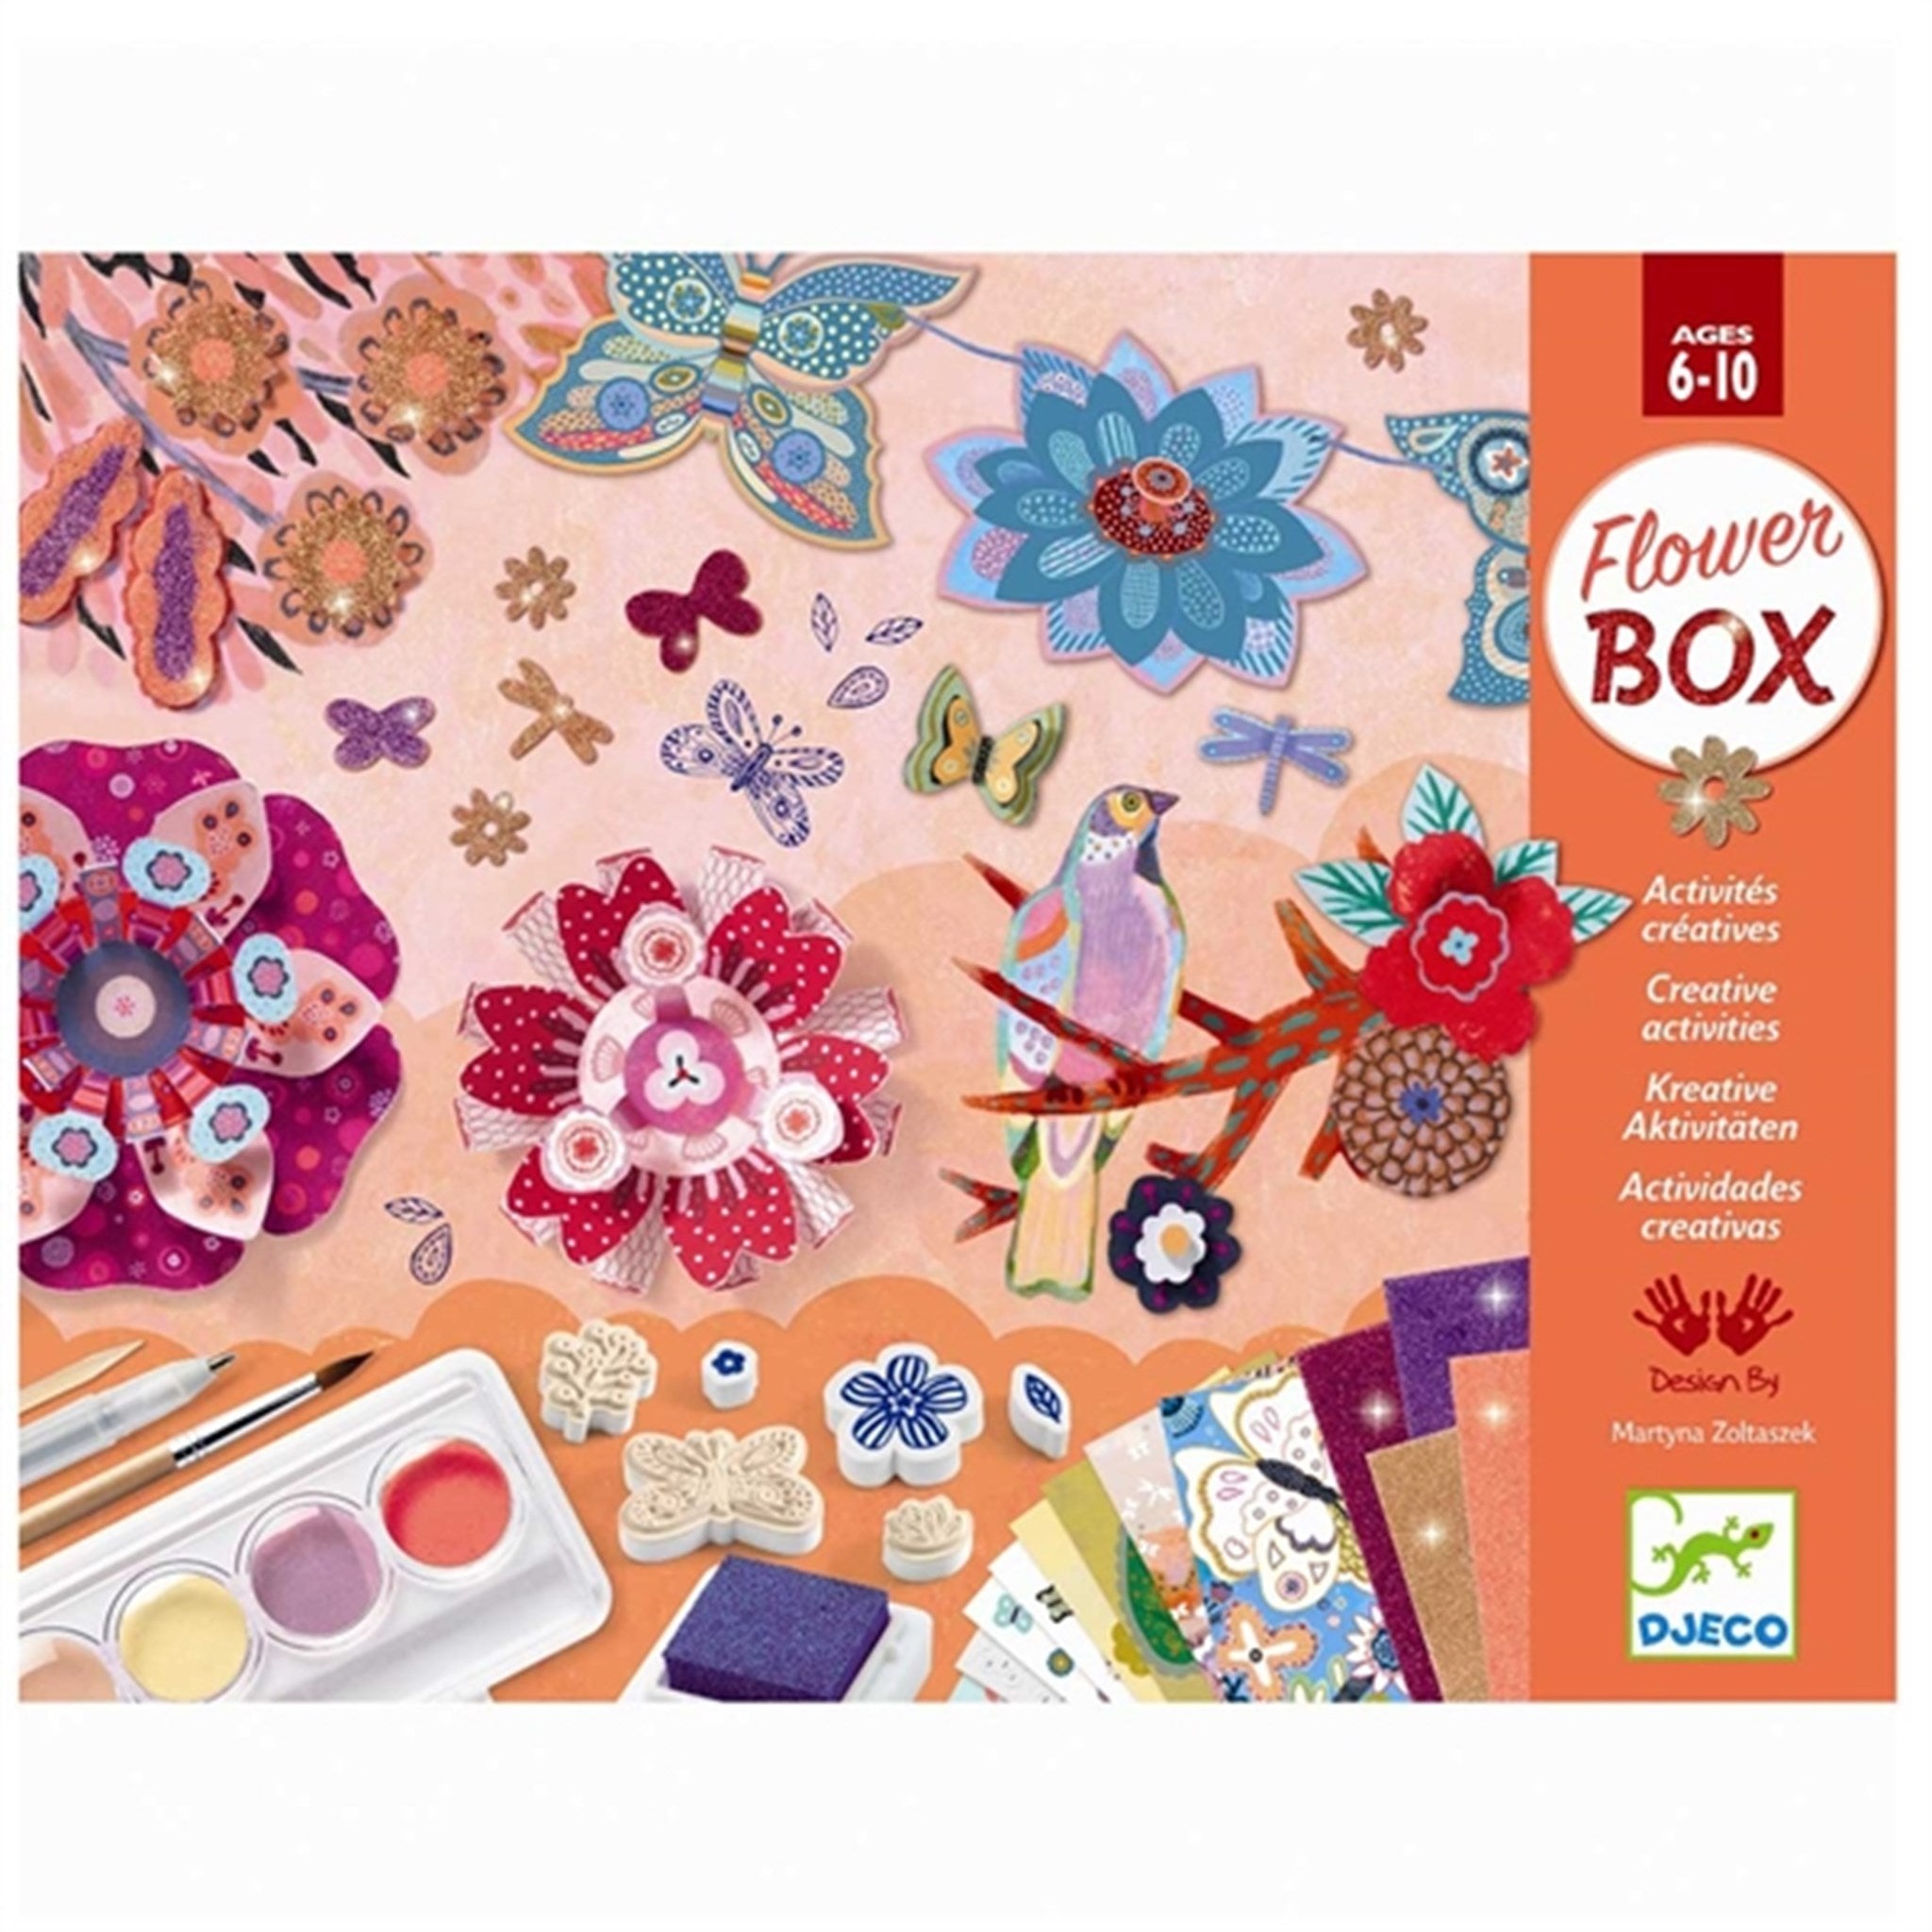 Djeco Creative Box - Flowergarden